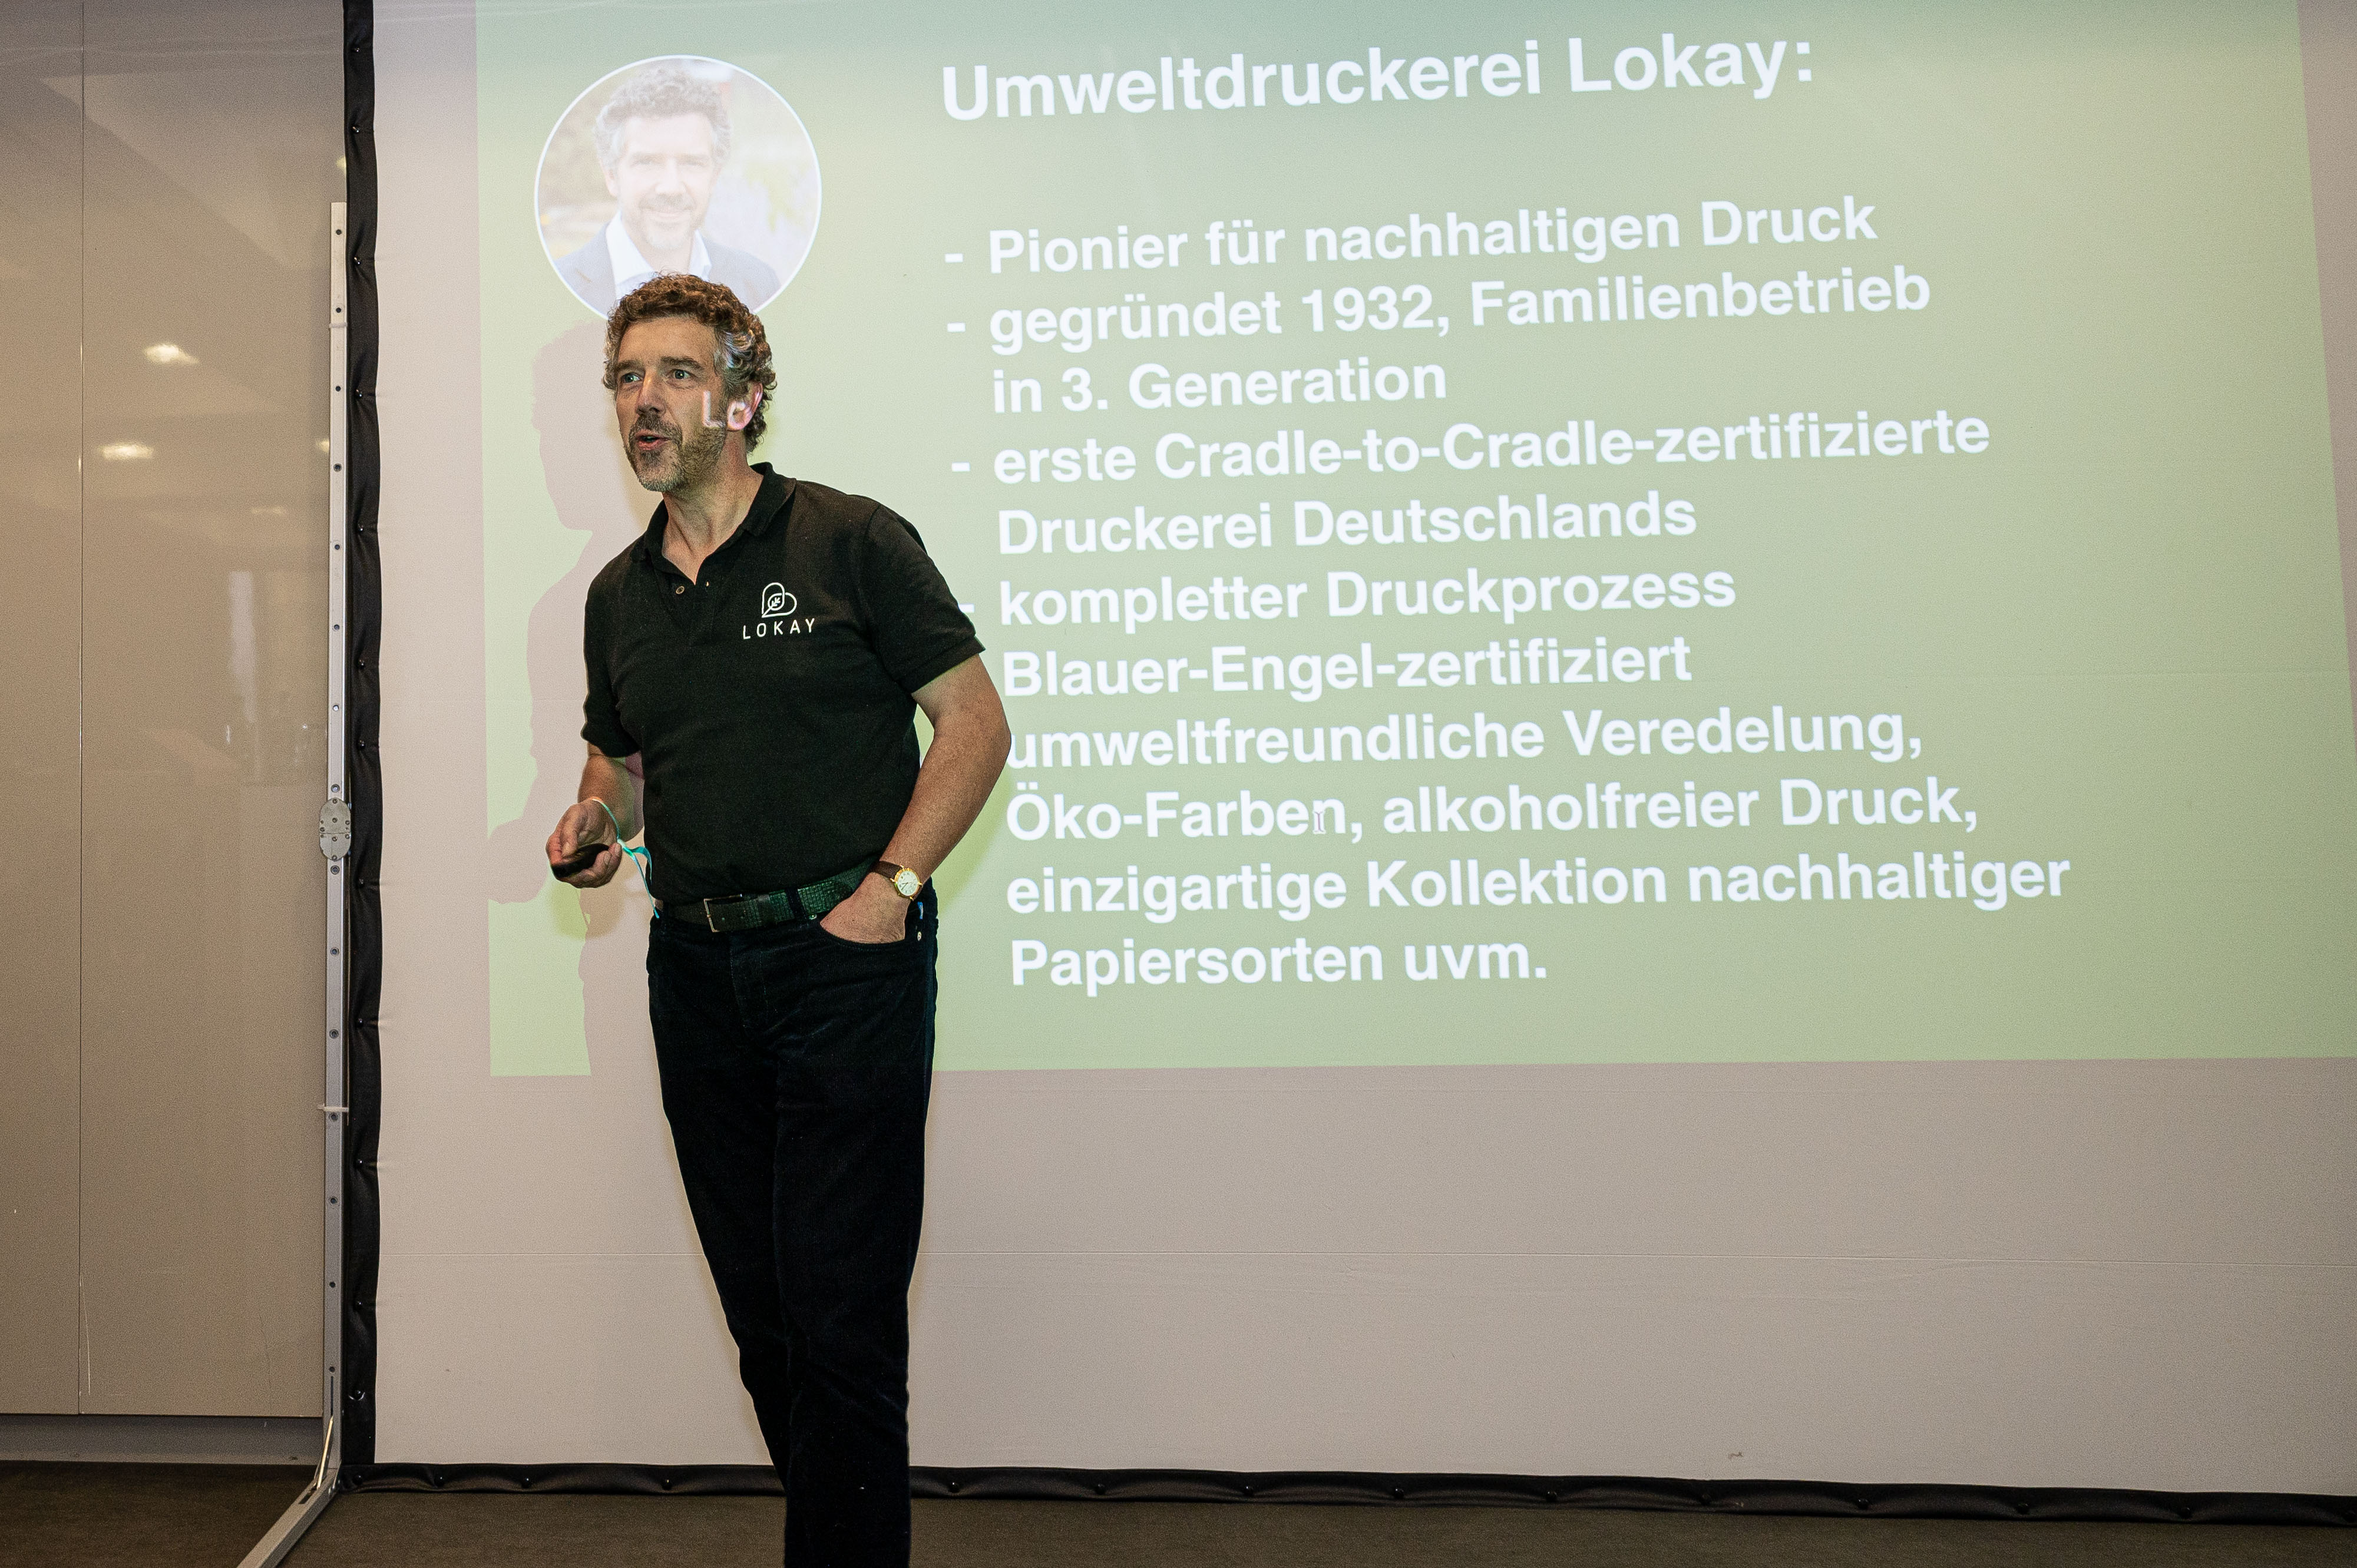 Ralf Lokay steht auf einer Bühne, hinter ihm ist eine große Leinwand, auf der ein Slide mit einer Unternehmensvorstellung von Lokay zu sehen ist. 